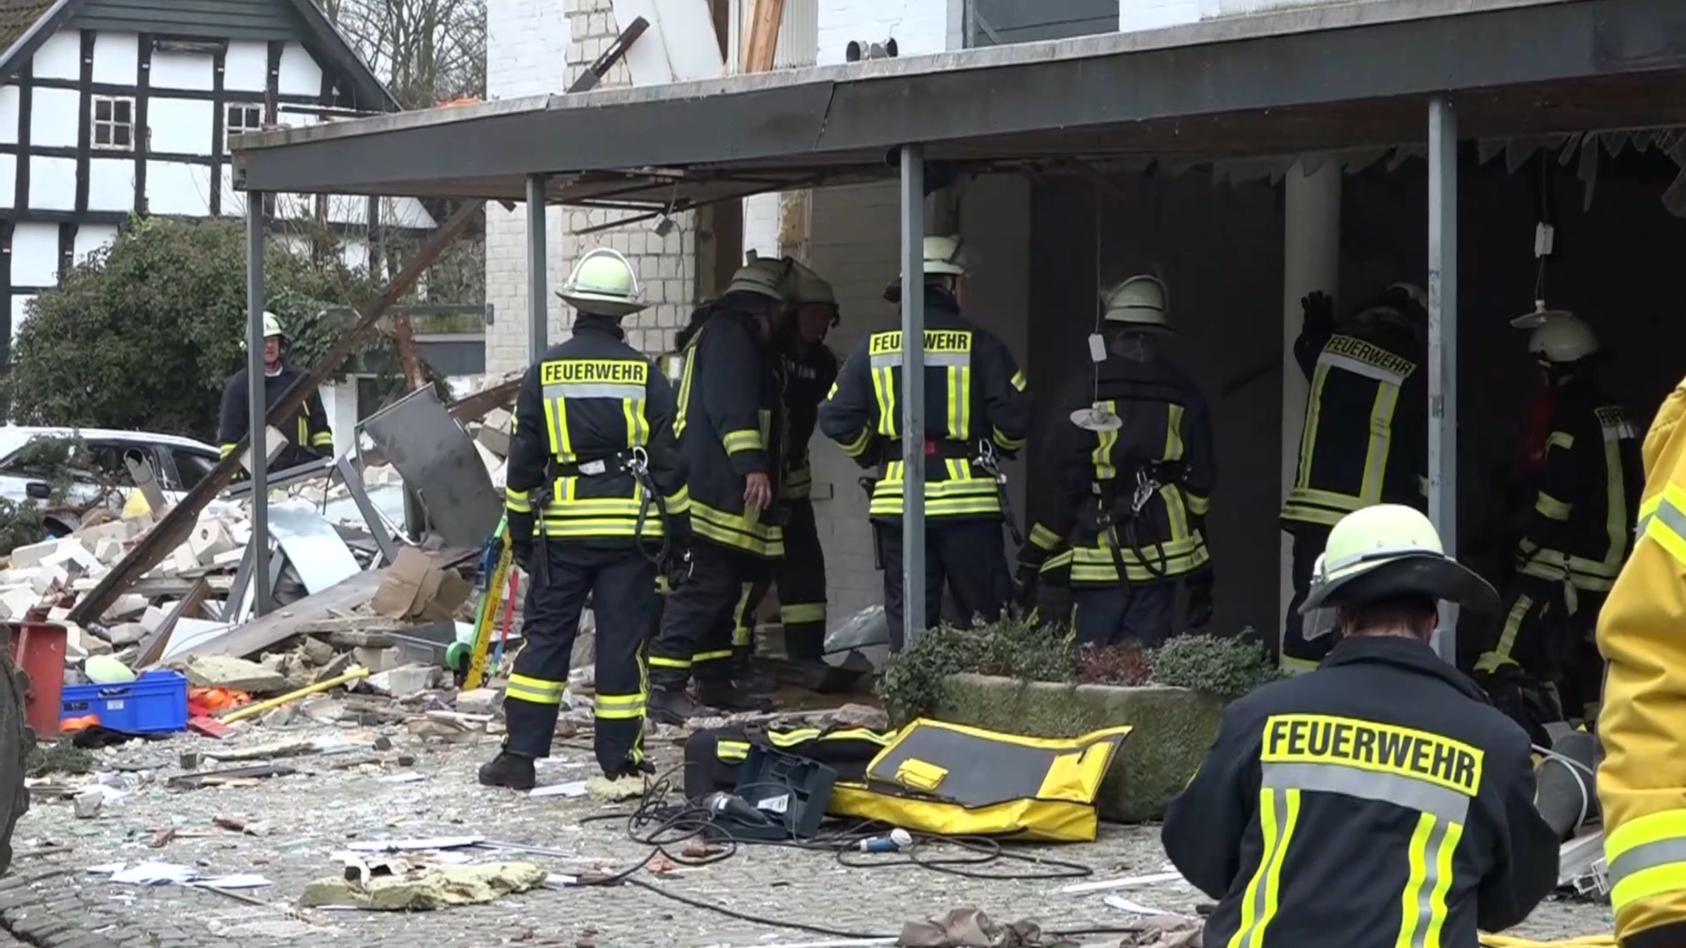 08.02.2020, Nordrhein-Westfalen, Lienen: Rettungskräfte stehen nach einer Gasexplosion vor einem Mehrfamilienhaus. Ob Personen verletzt wurden ist derzeit noch nicht bekannt. Foto: David Poggemann/Nord-West-Media TV /dpa +++ dpa-Bildfunk +++